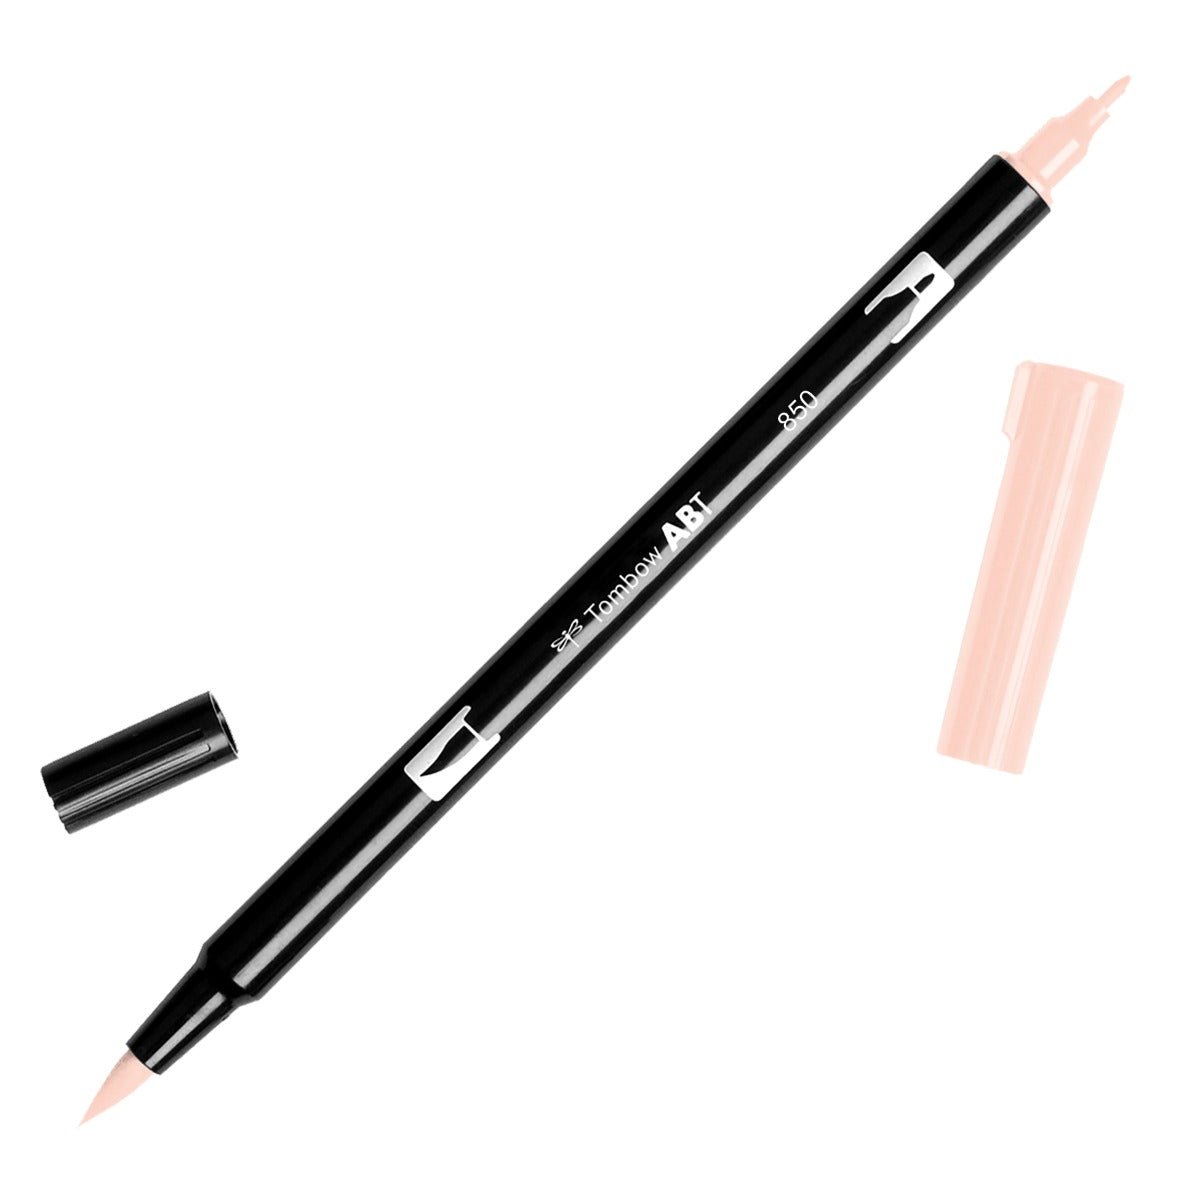 Tombow Dual Brush Pen 850 Flesh - theartshop.com.au